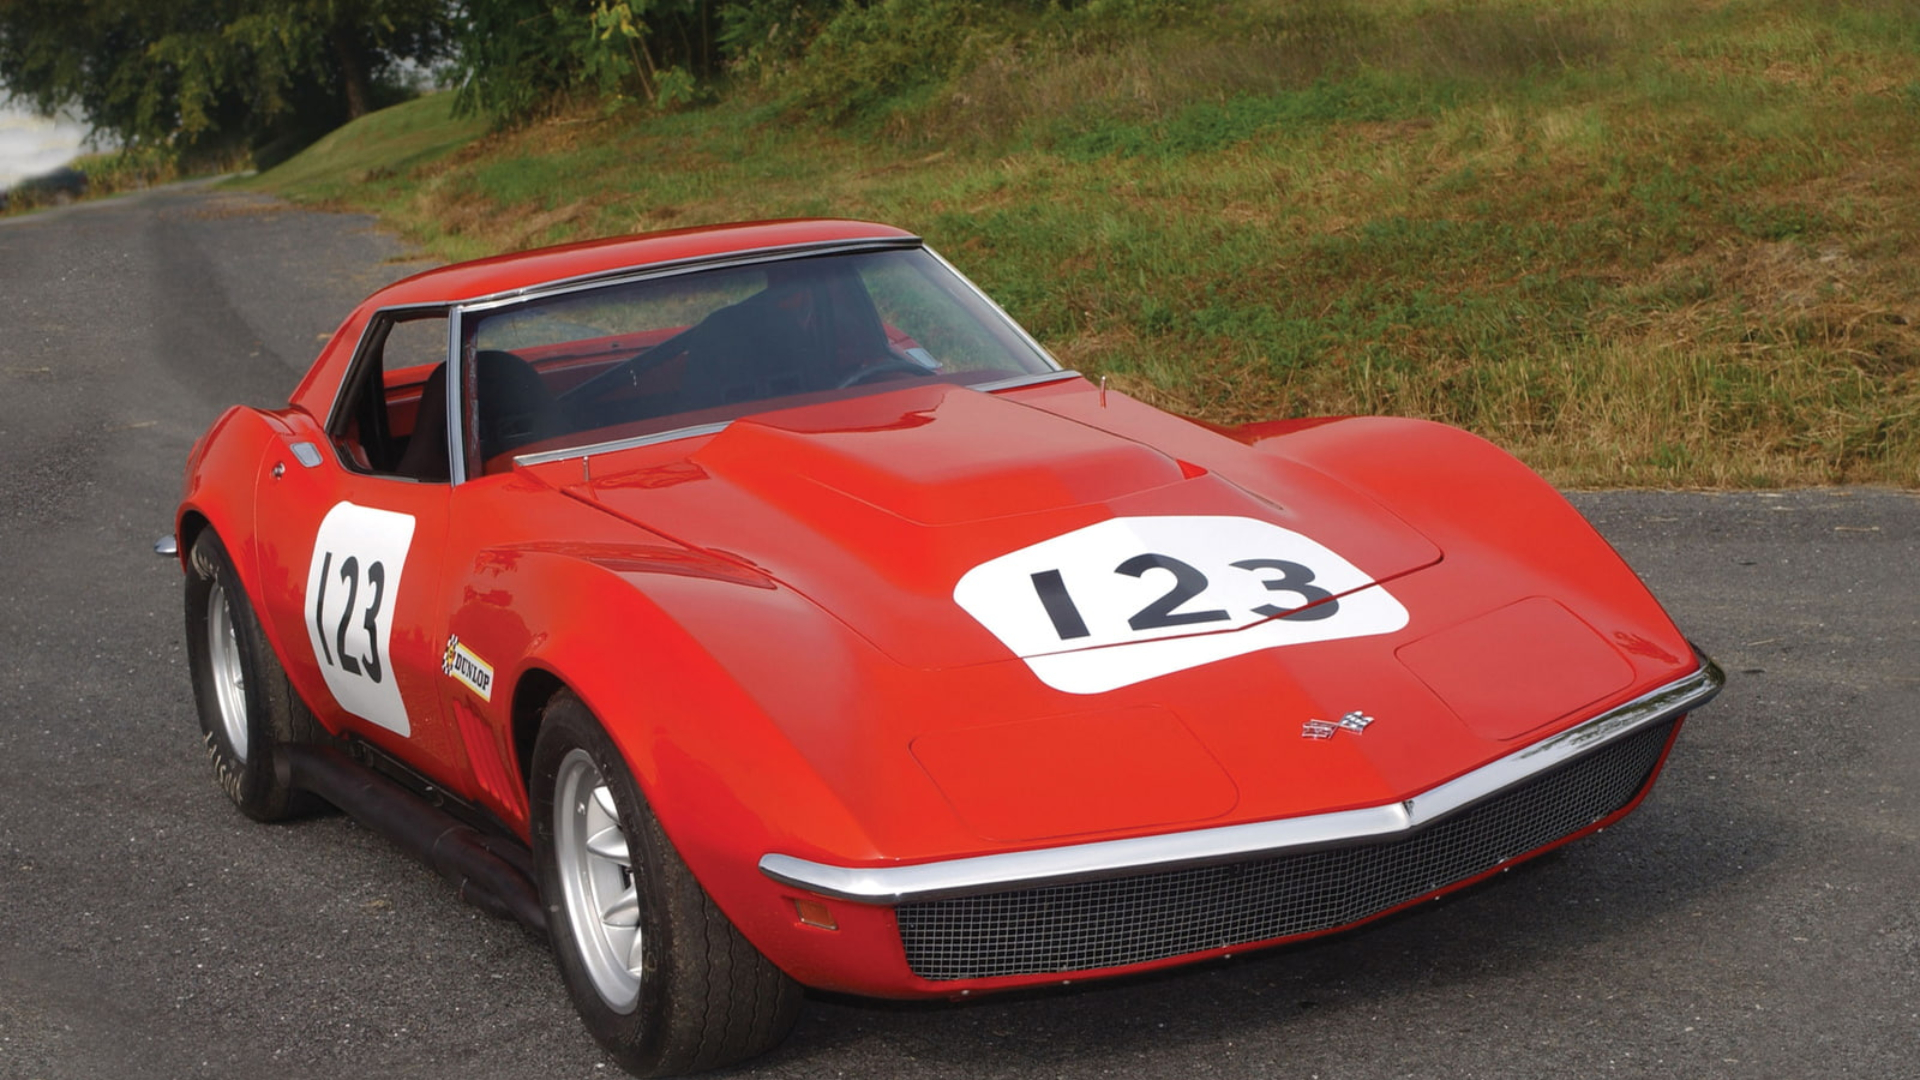 1968 Corvette Wallpapers